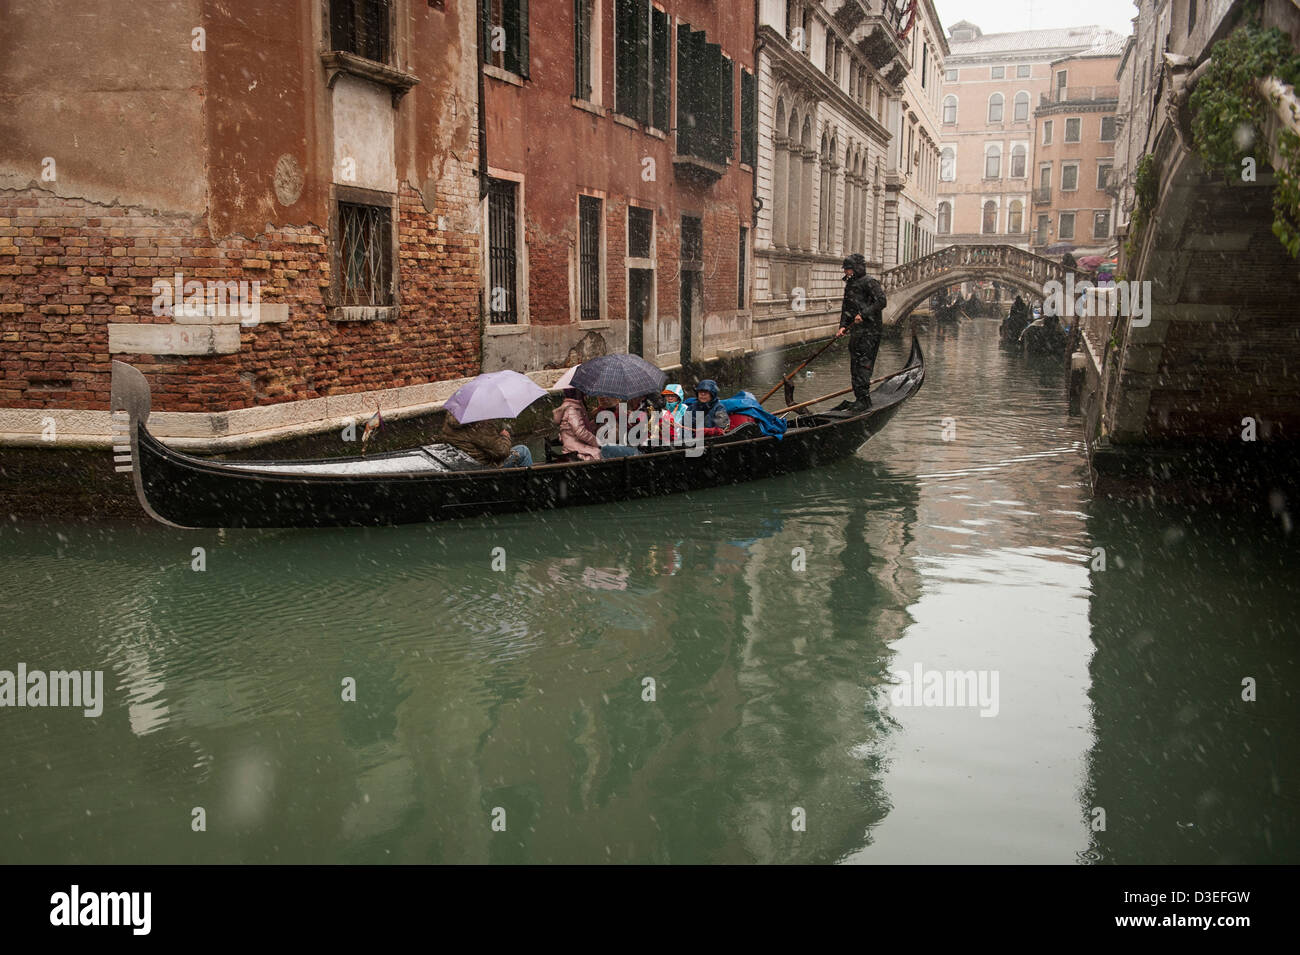 Un gondolier emmène les touristes pour une promenade en gondole au cours d'une forte chute de neige à Venise, Italie. Banque D'Images